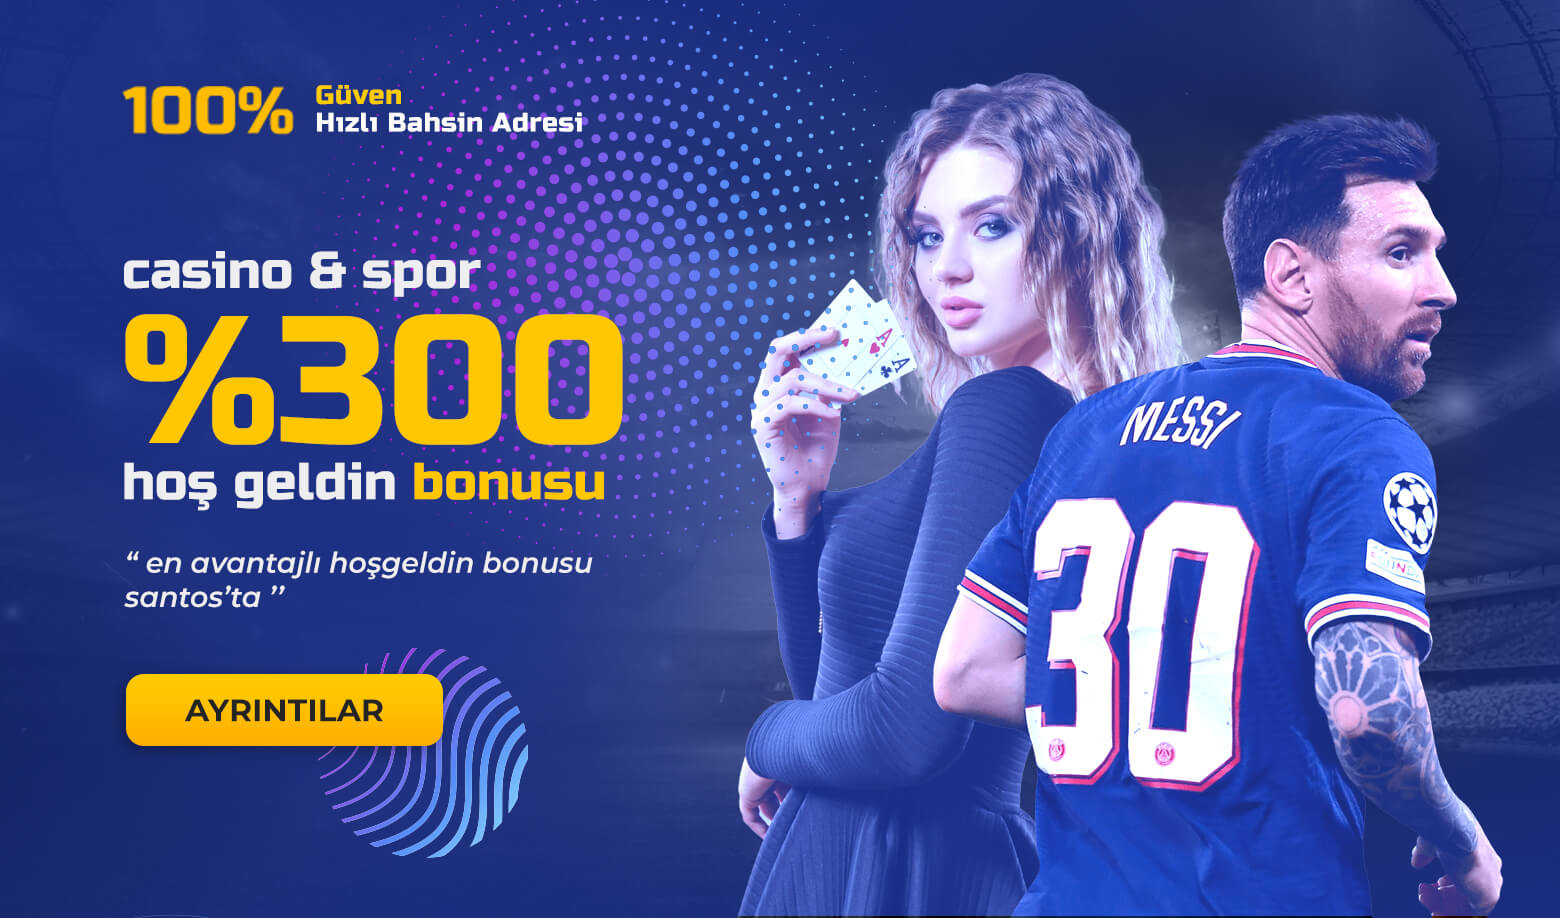 Santosbetting %300 Casino & Spor Hoş Geldin Bonusu